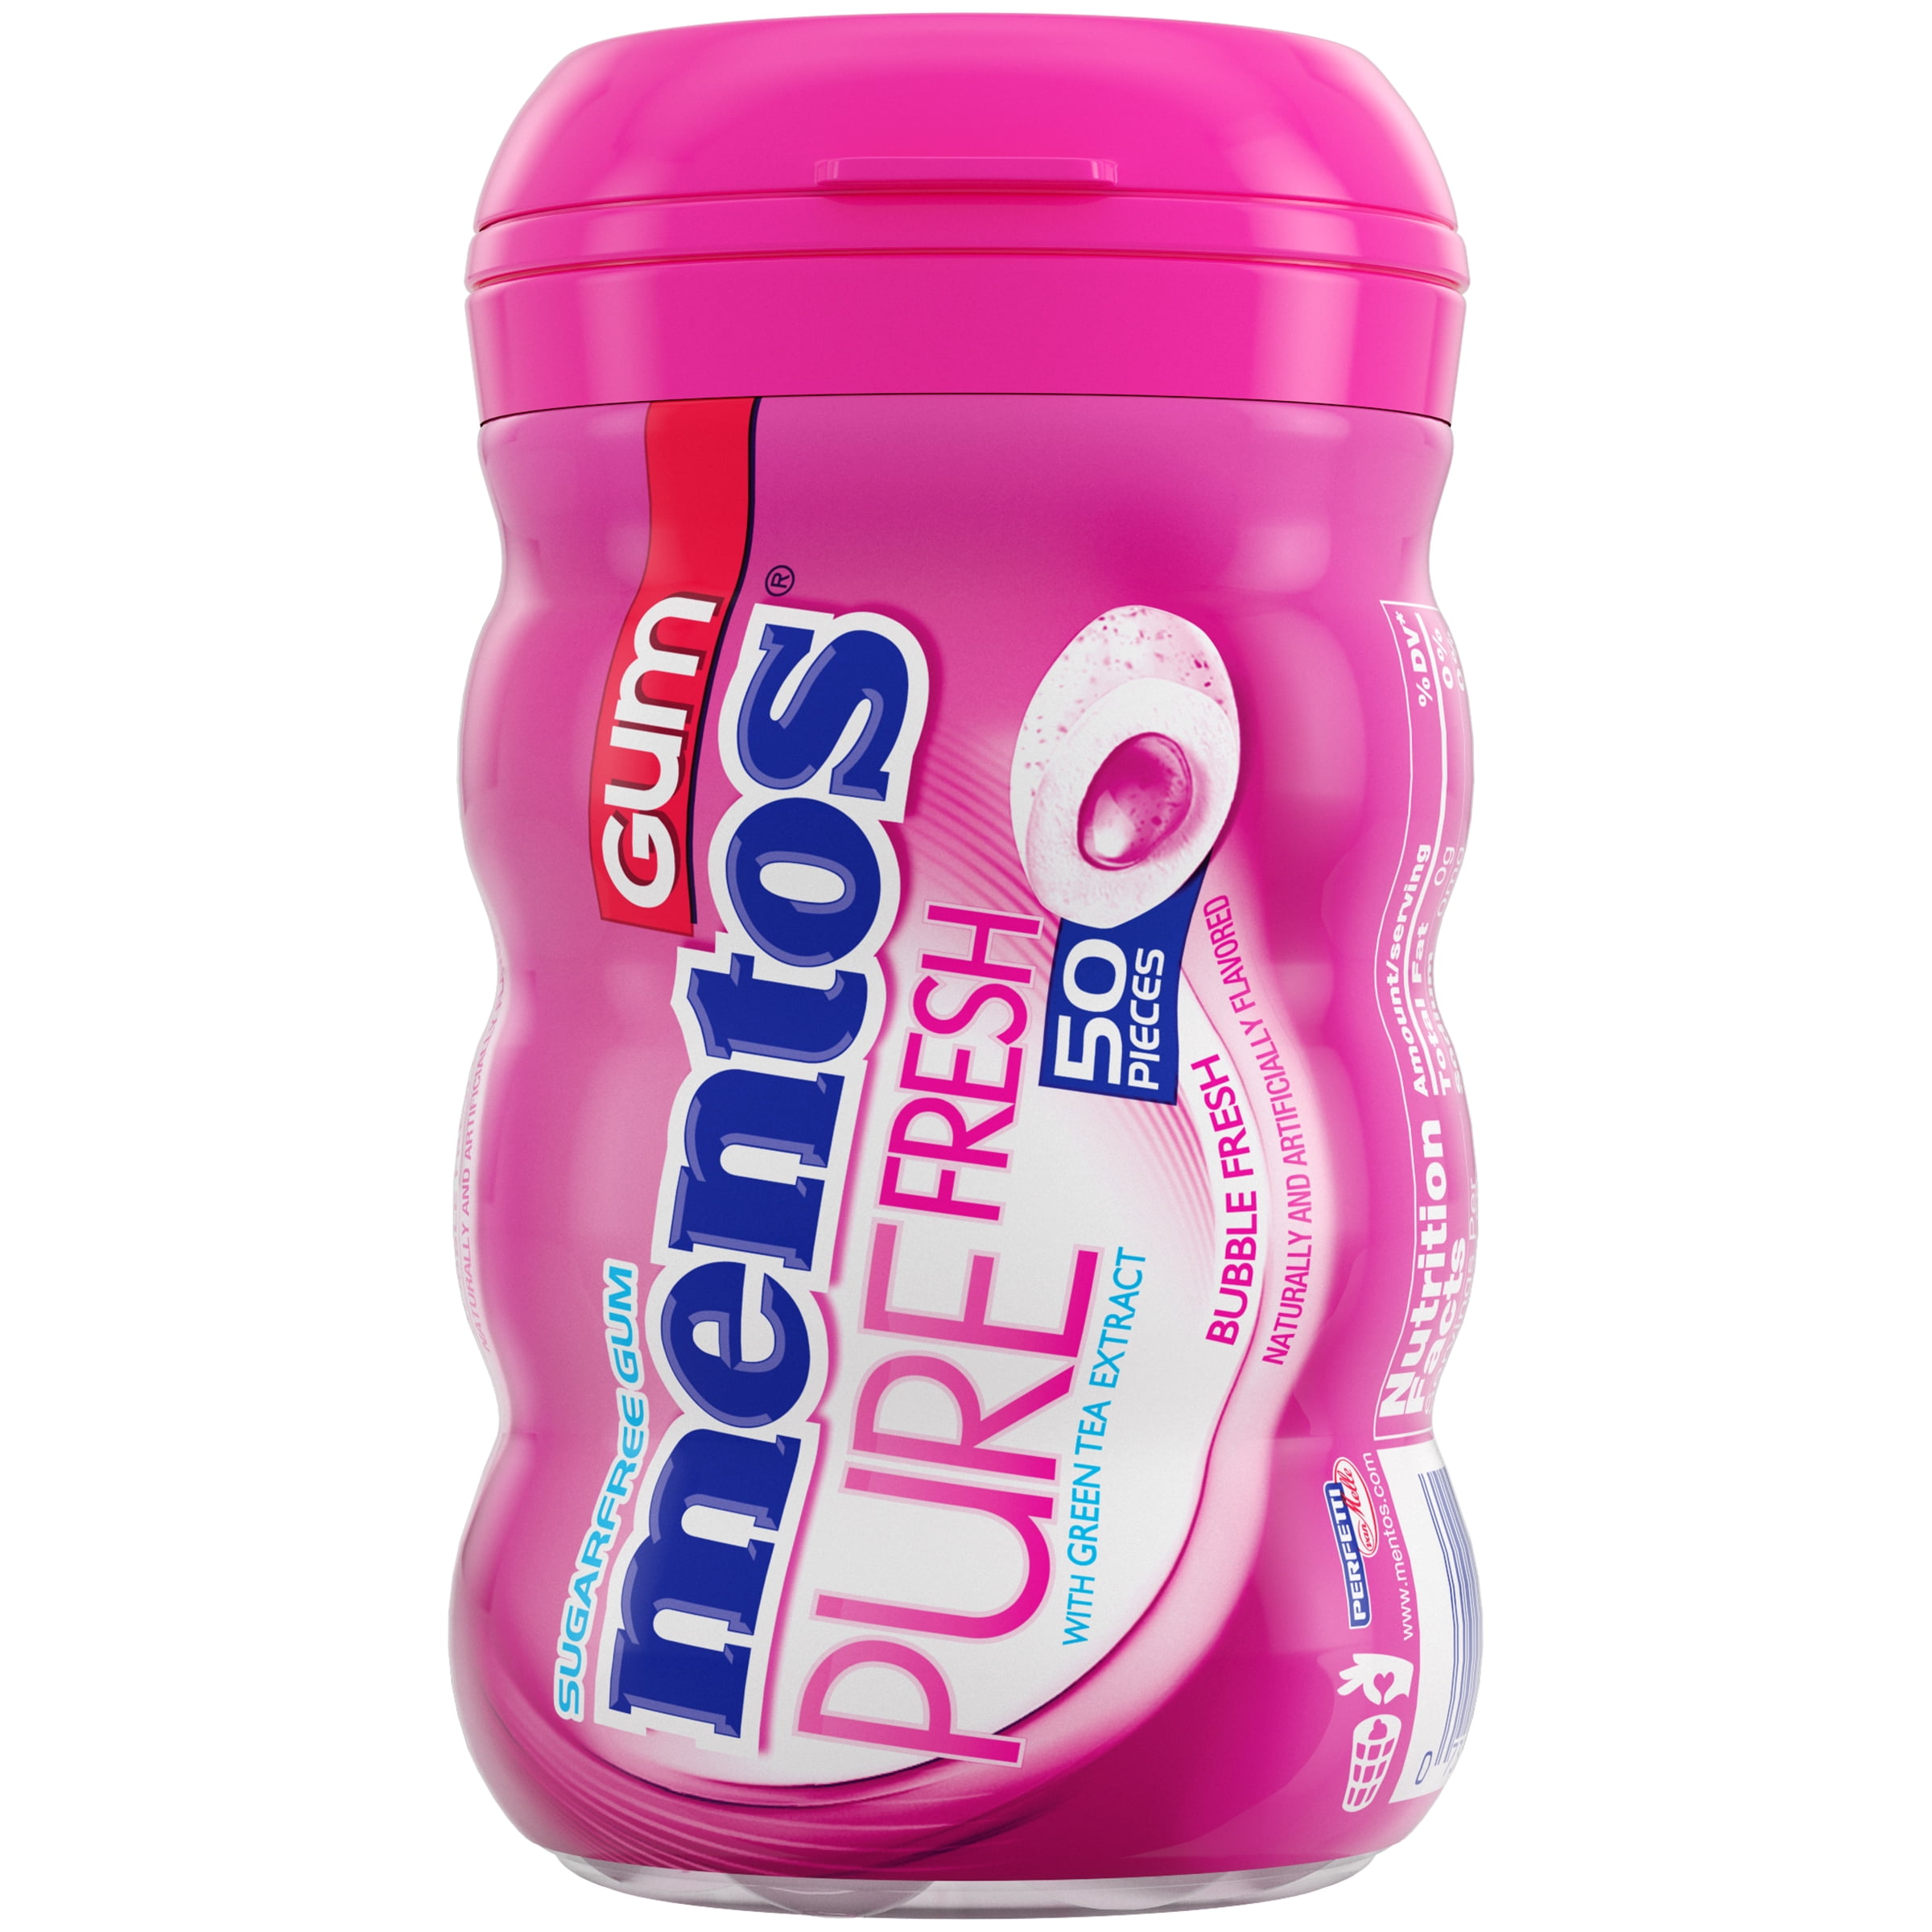 Mentos Pure Fresh Bubble Fresh Flavour Sugar Free Gum 30G